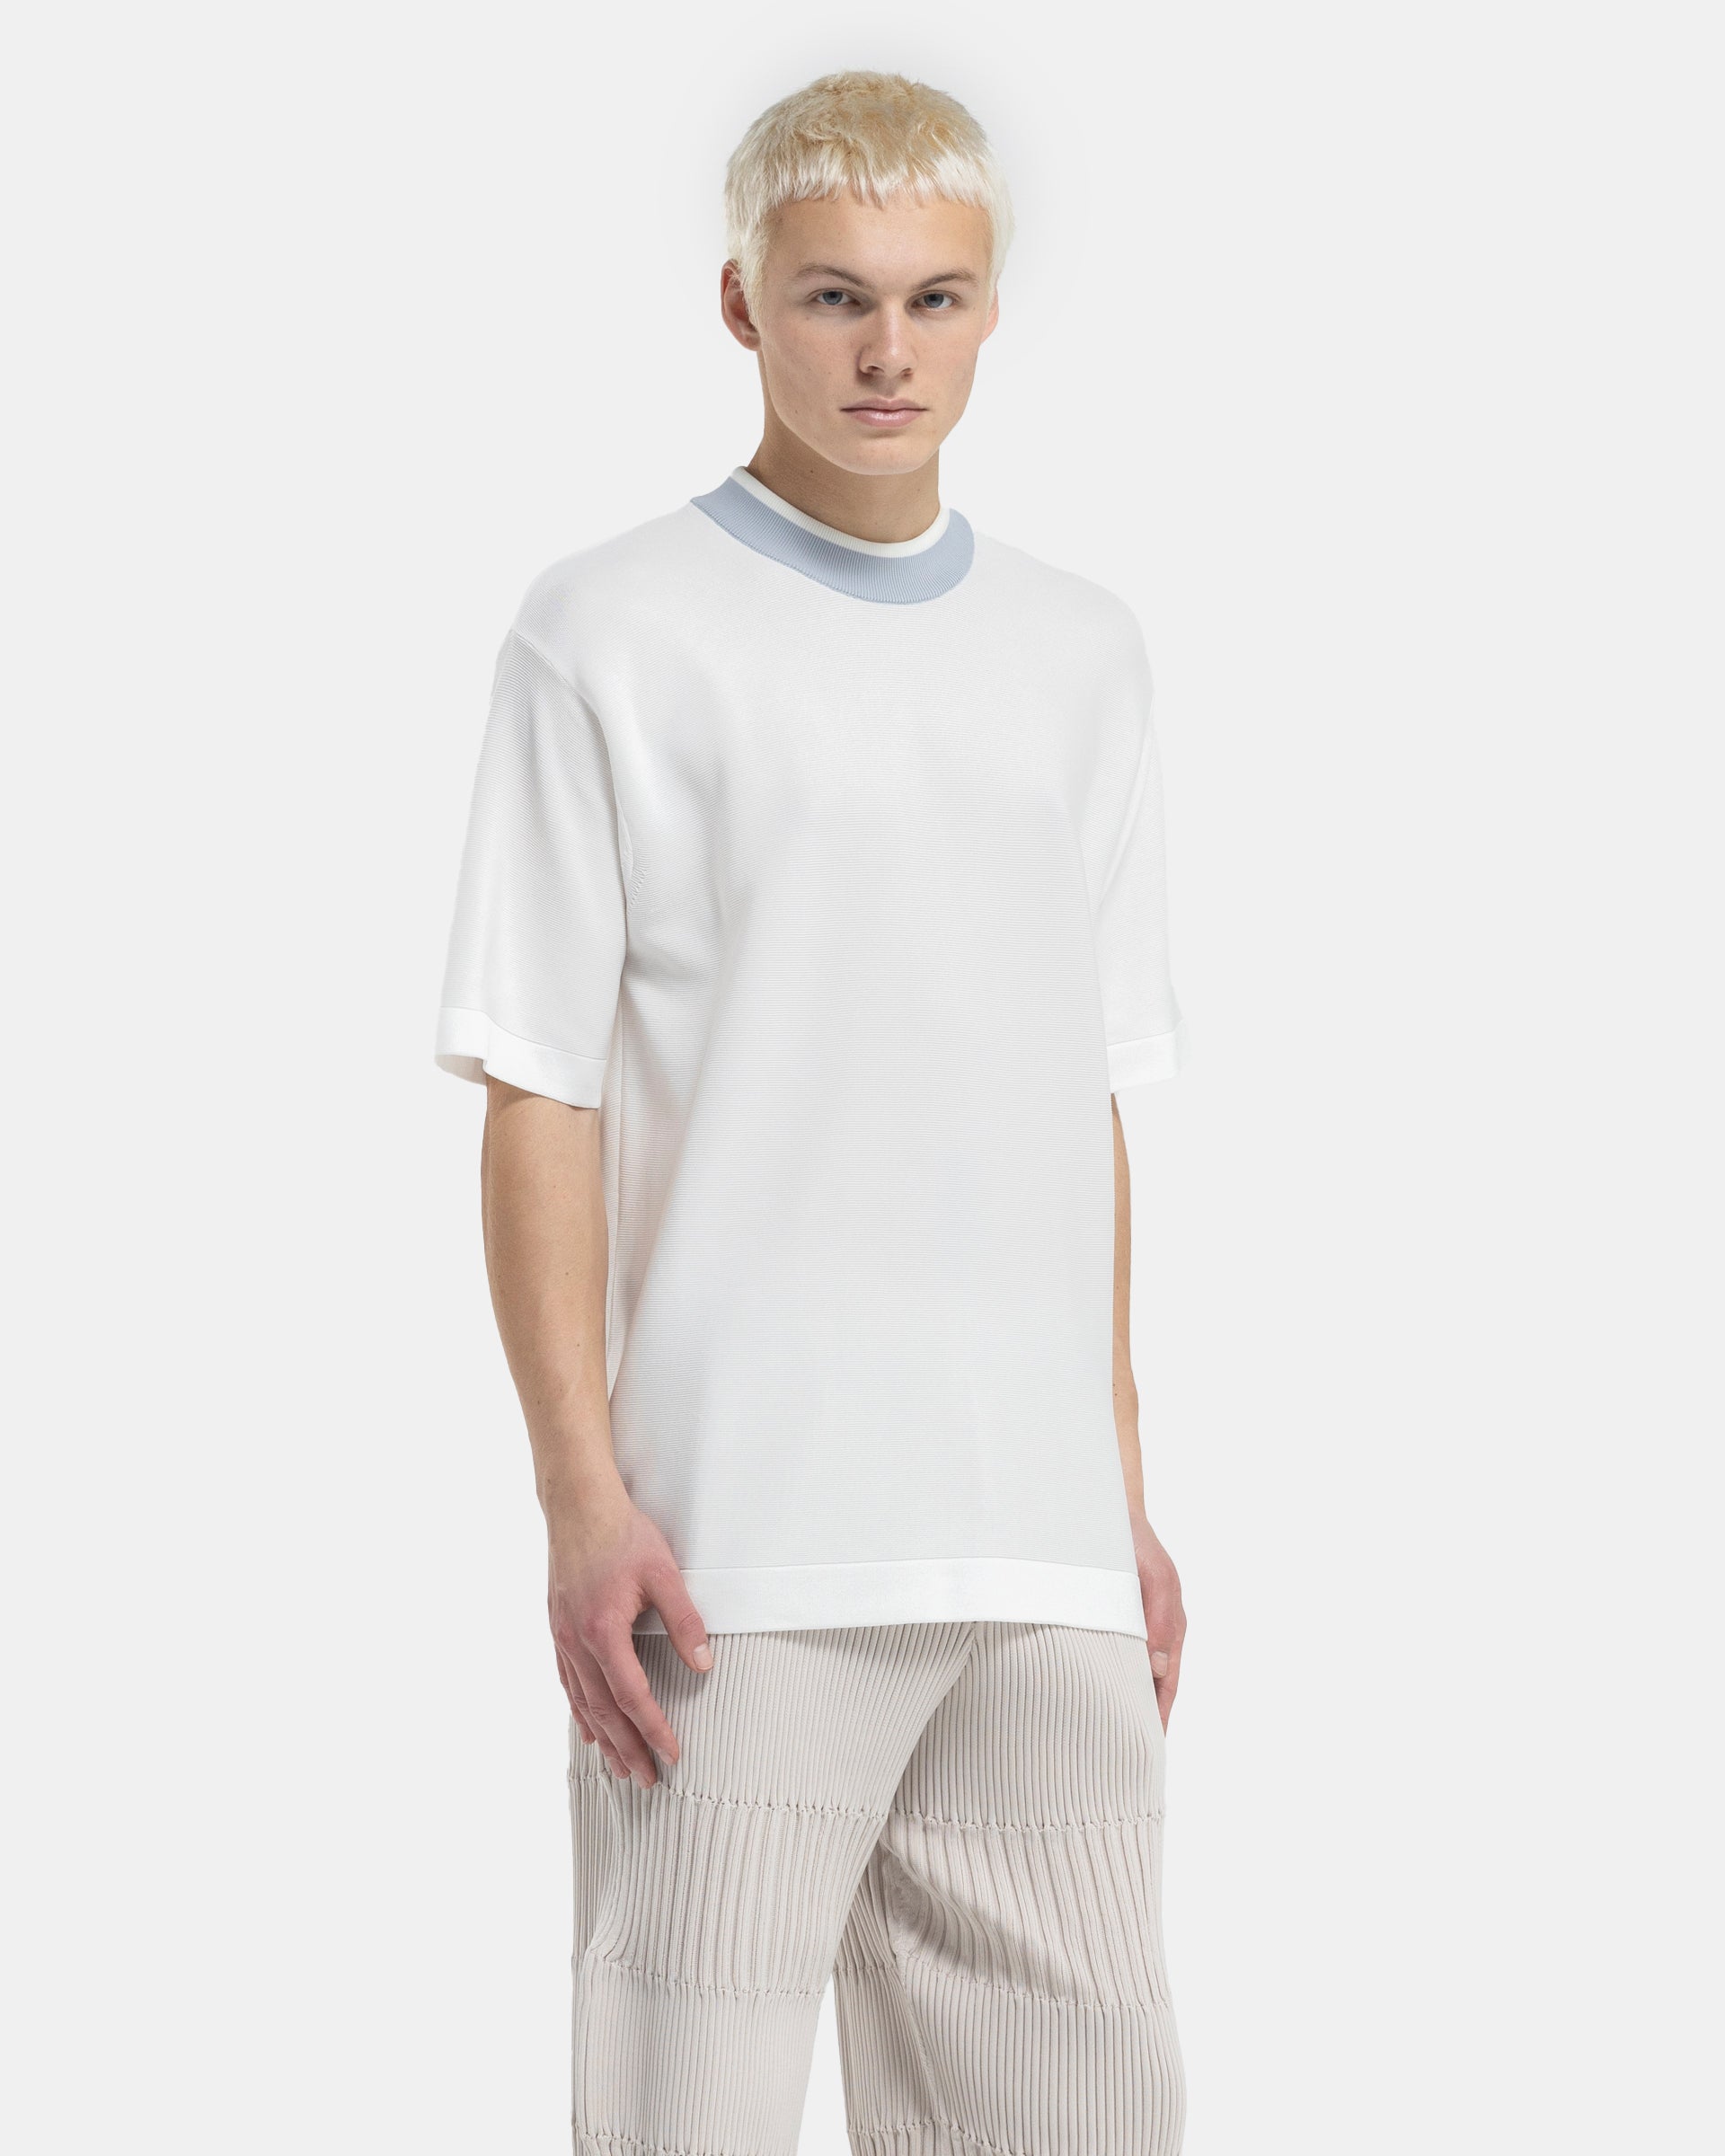 Cupro Garter Short Sleeve T-Shirt in White Multi